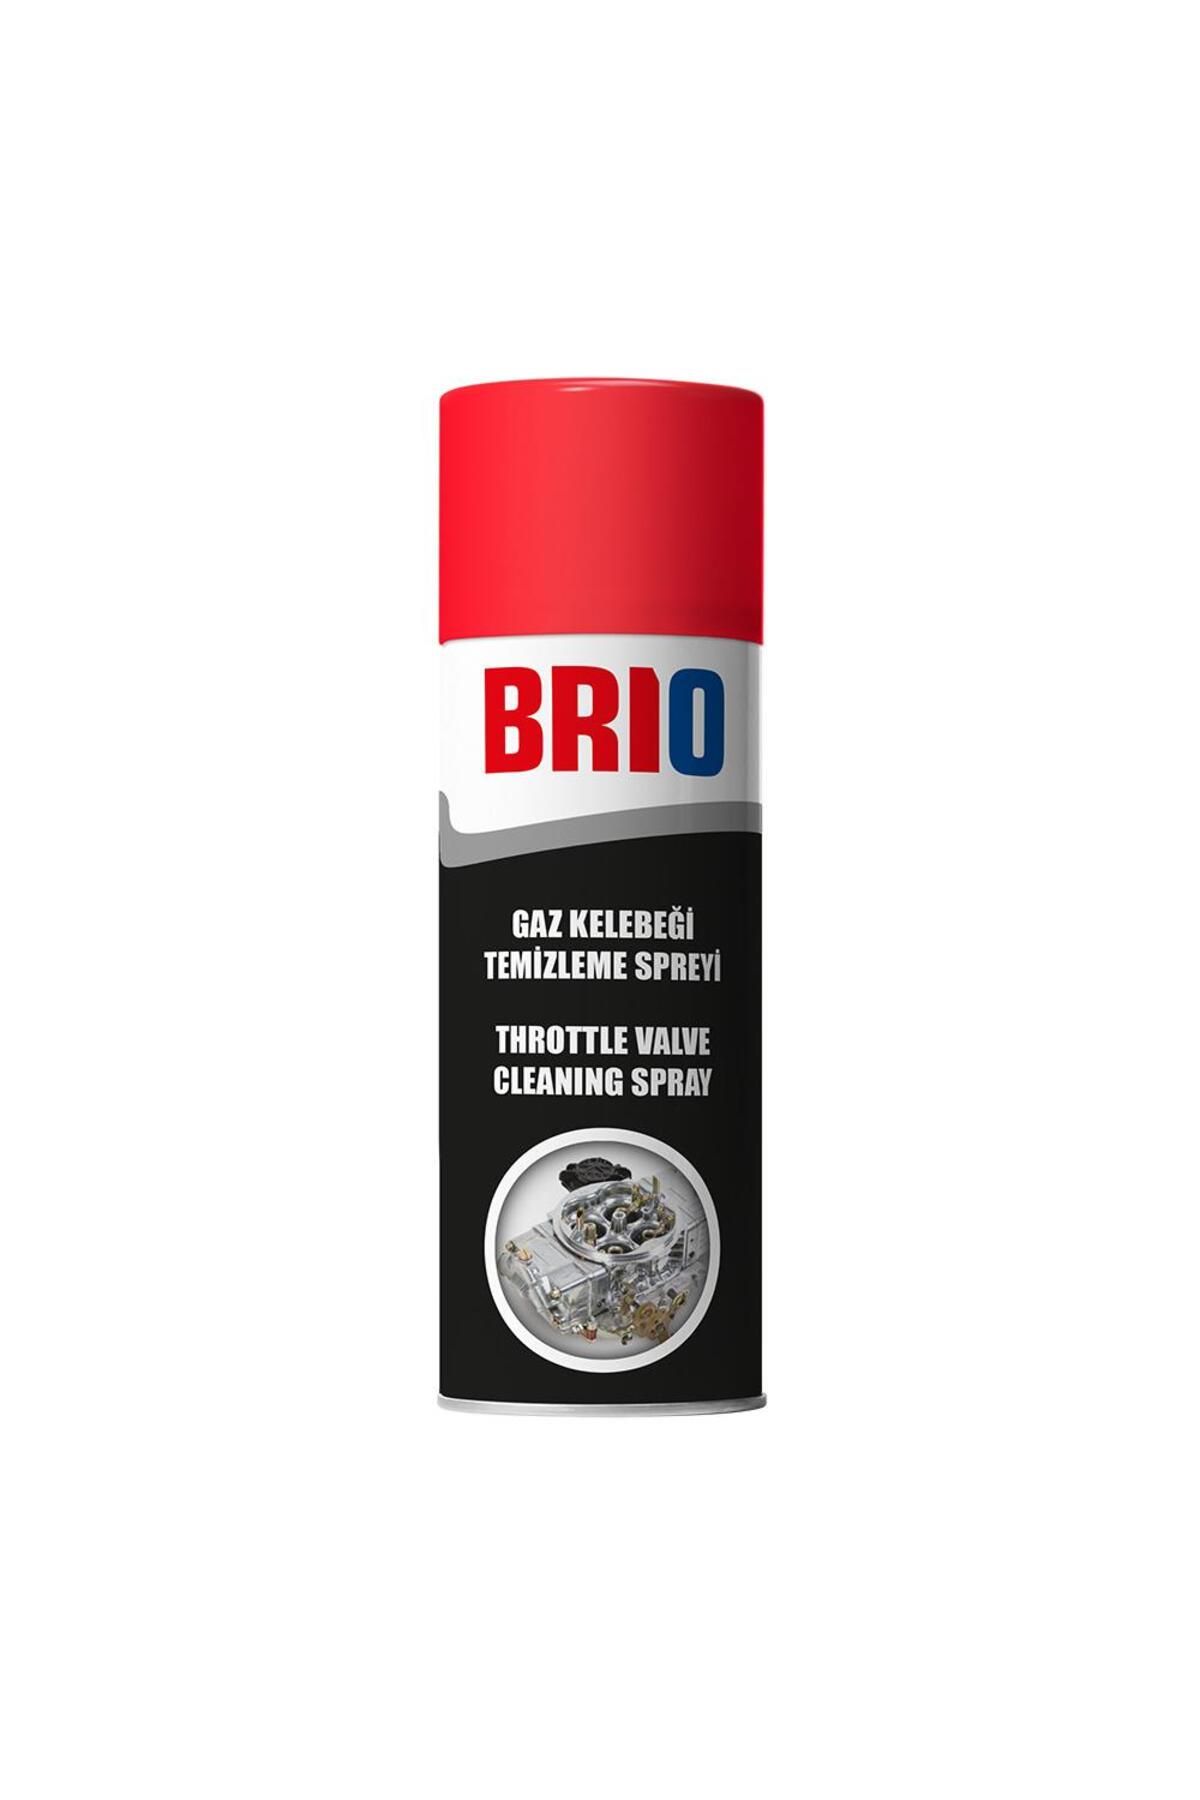 Brio Gaz Kelebeği Boğaz Kelebeği Temizleme Spreyi 400 ml